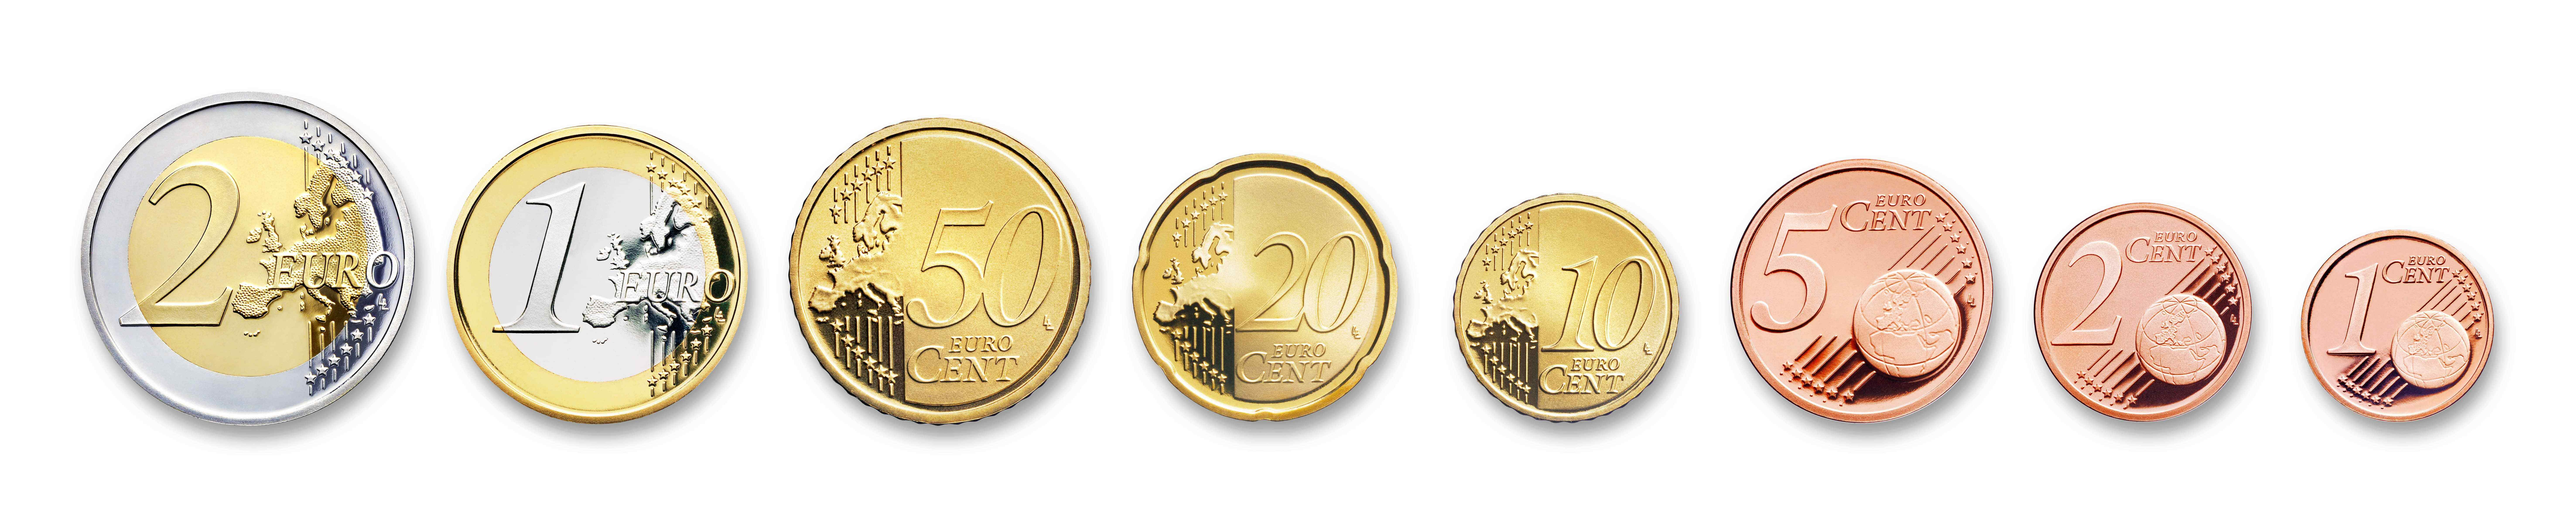 Toutes les pièces en euros